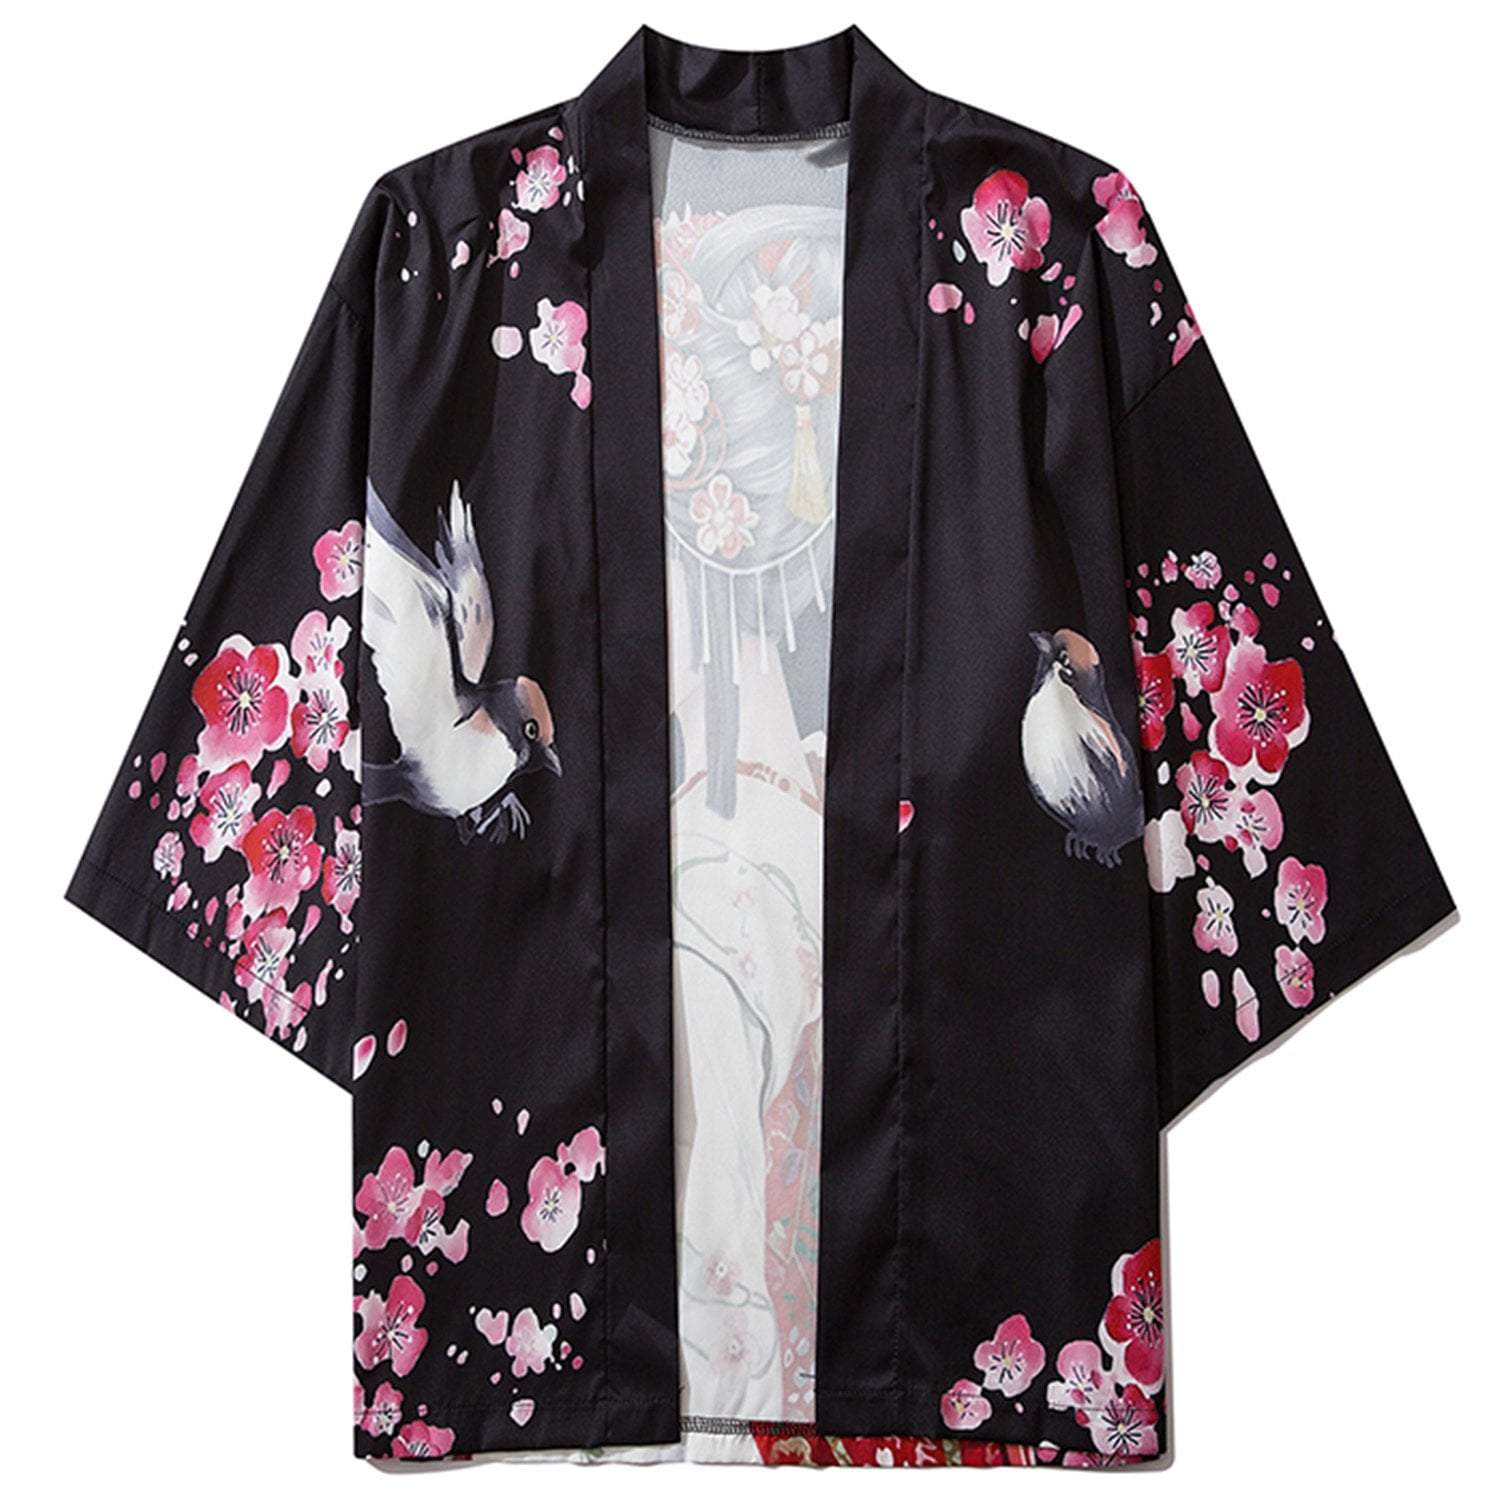 TO Geisha Kimono